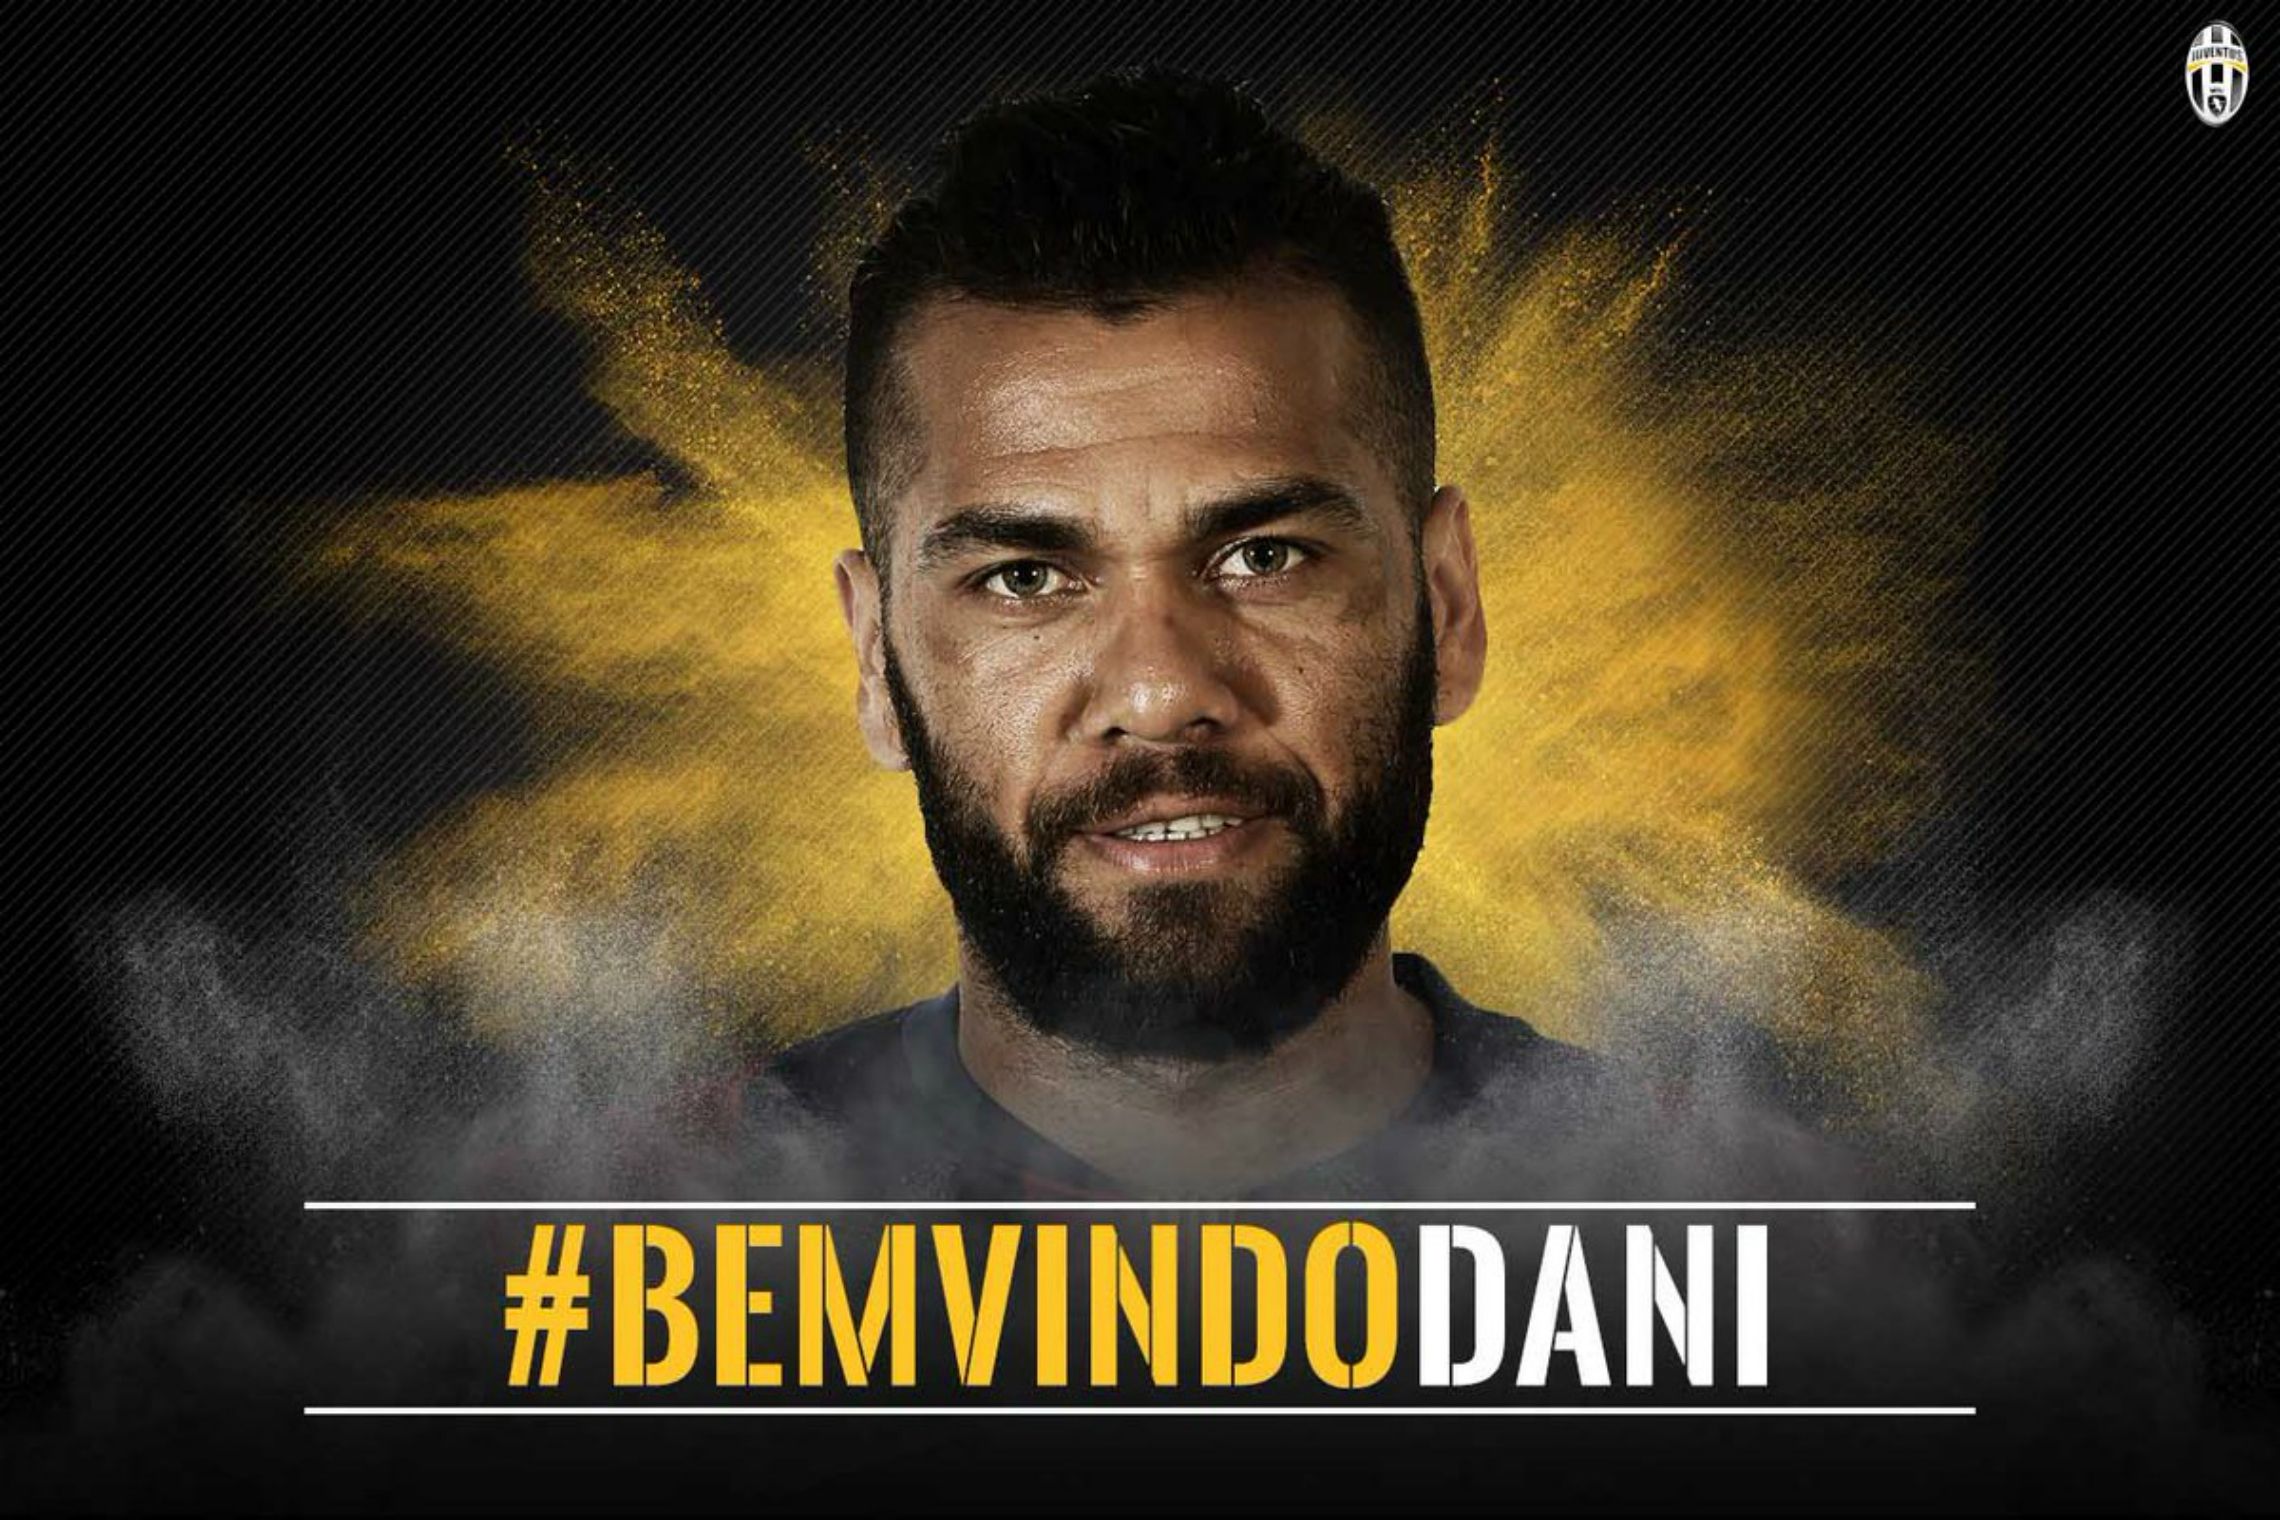 Dani Alves ja és jugador de la Juventus